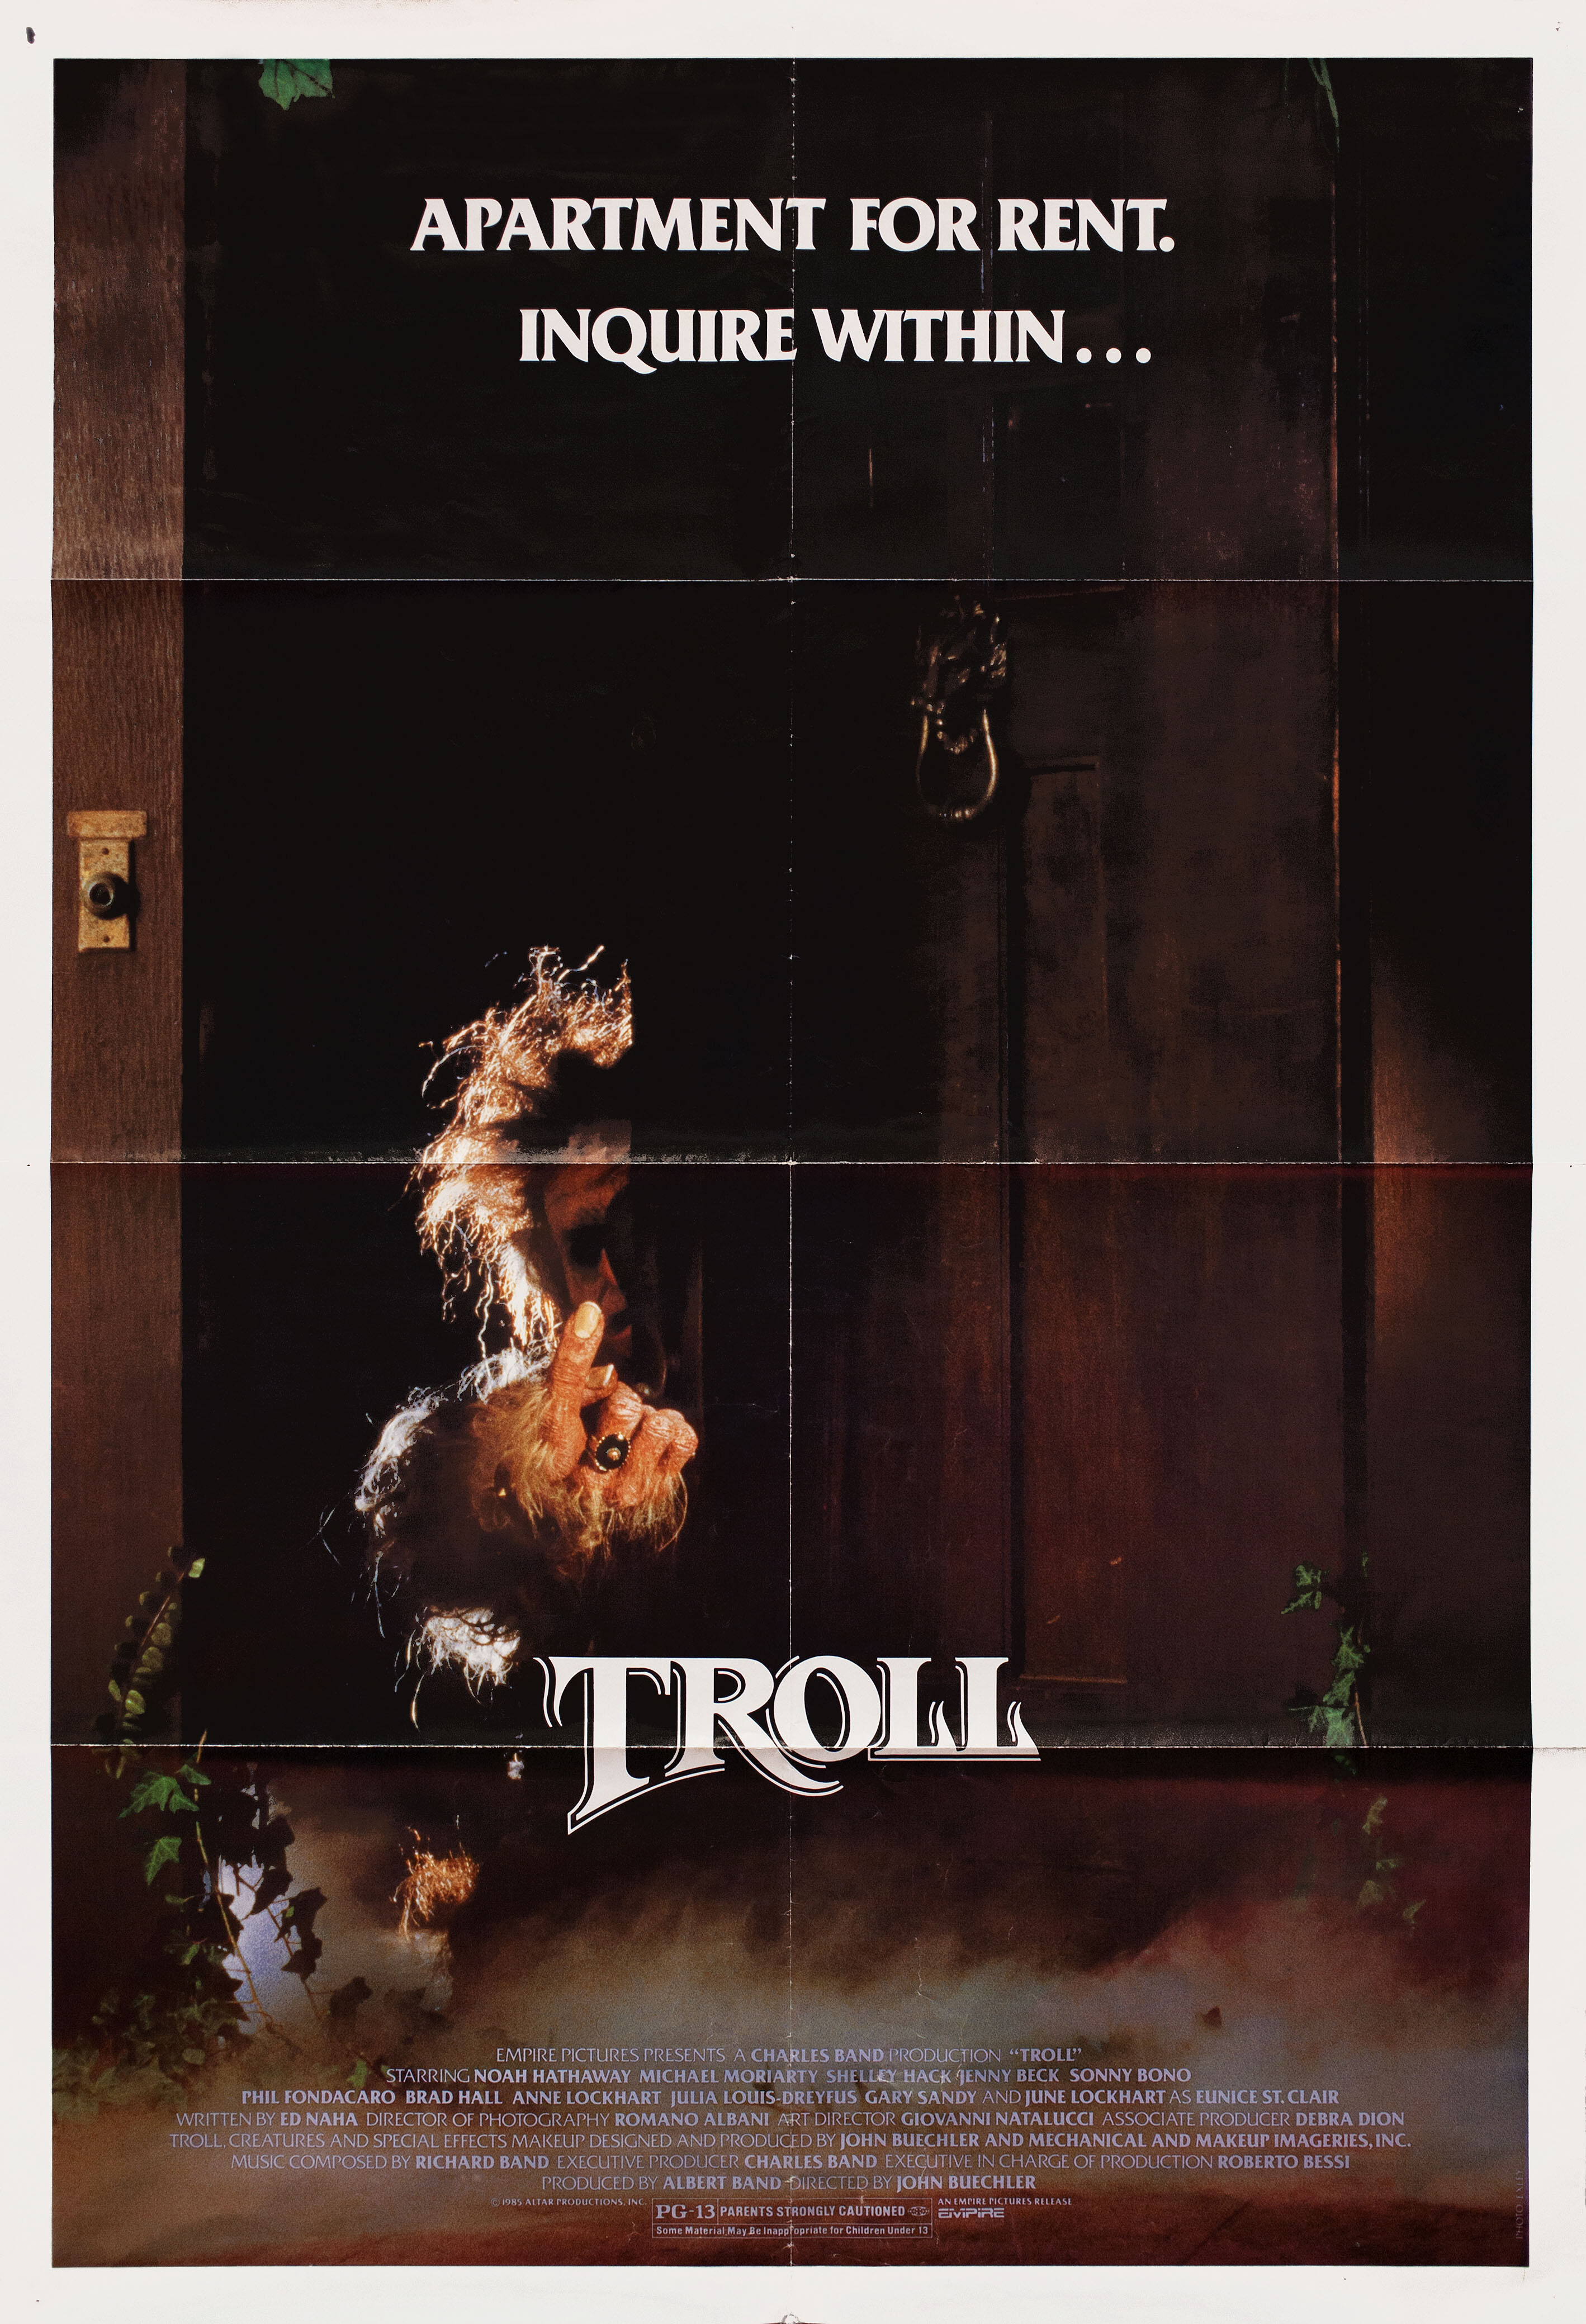 Тролль (Troll, 1986), режиссёр Джон Карл Бюхлер, американский постер к фильму (ужасы, 1986 год)